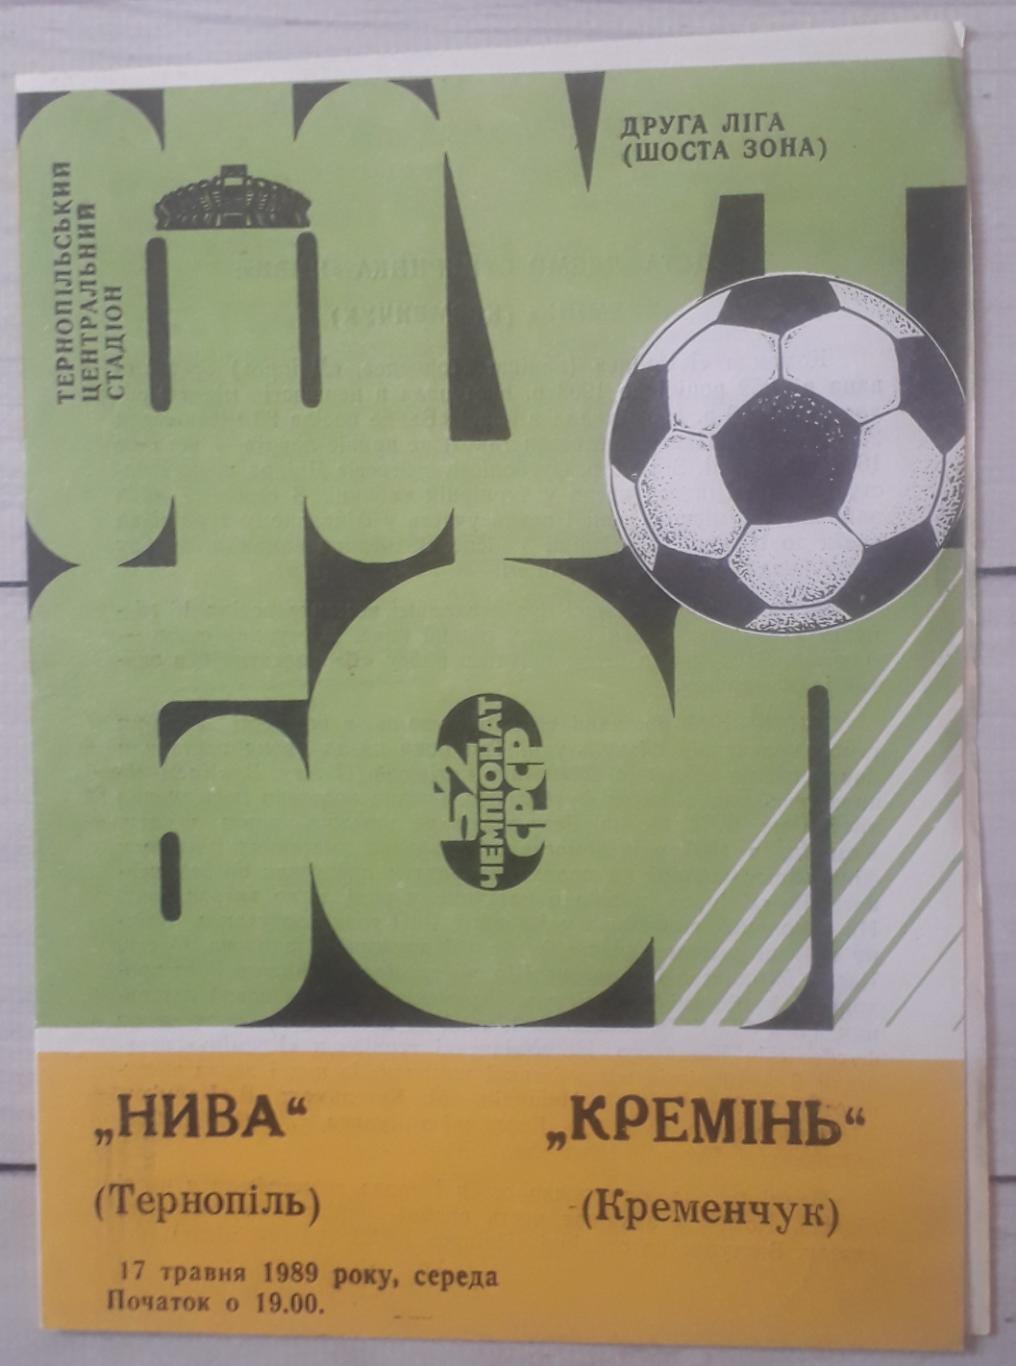 Нива Тернопіль - Кремінь Кременчук 17.05.1989.